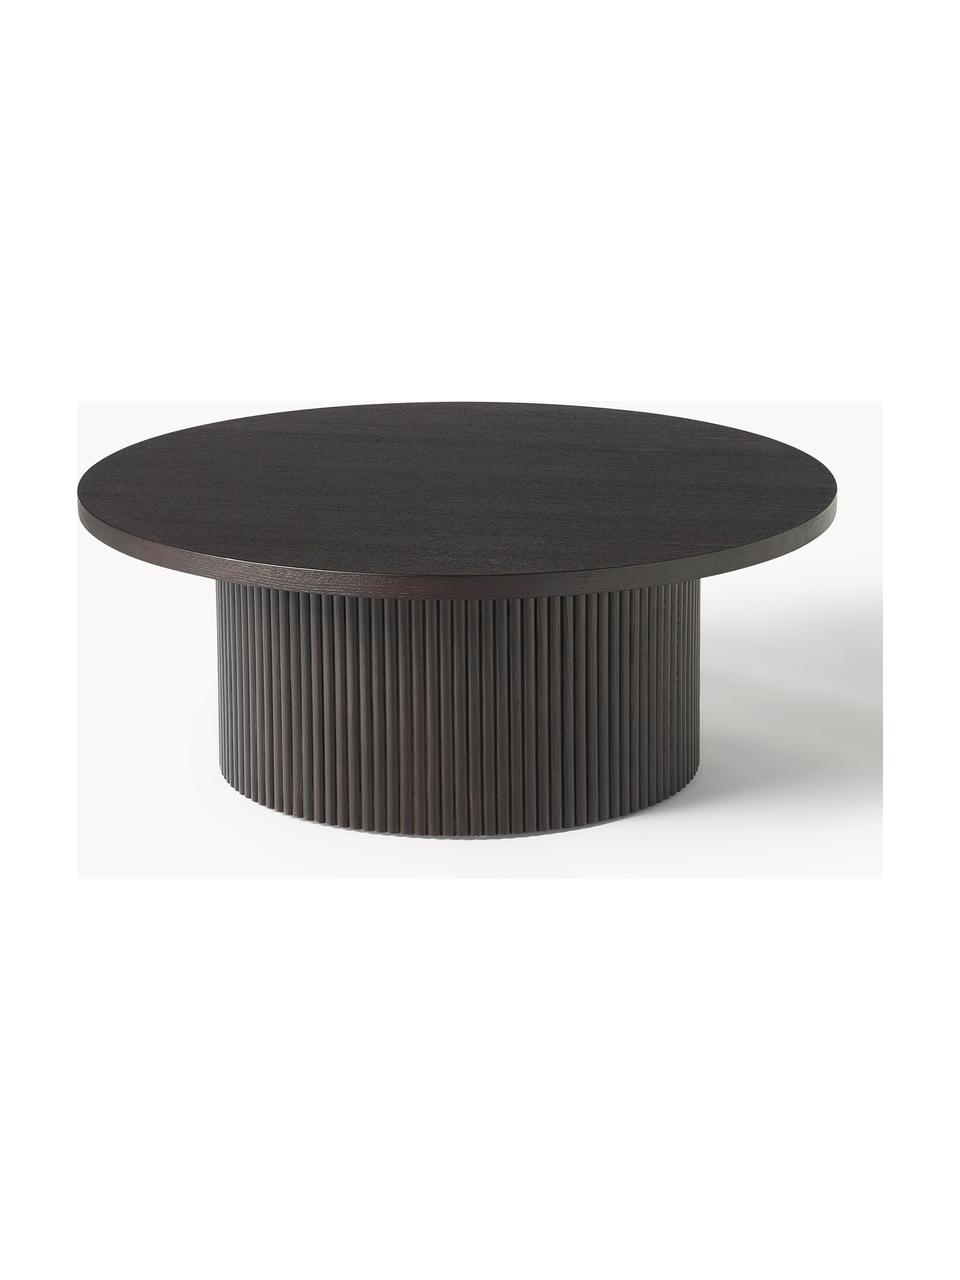 Kulatý dřevěný konferenční stolek Nele, Dřevovláknitá deska střední hustoty (MDF) s jasanovou dýhou

Tento produkt je vyroben z udržitelných zdrojů dřeva s certifikací FSC®., Dřevo, tmavě hnědě lakované, Ø 85 cm, V 33 cm